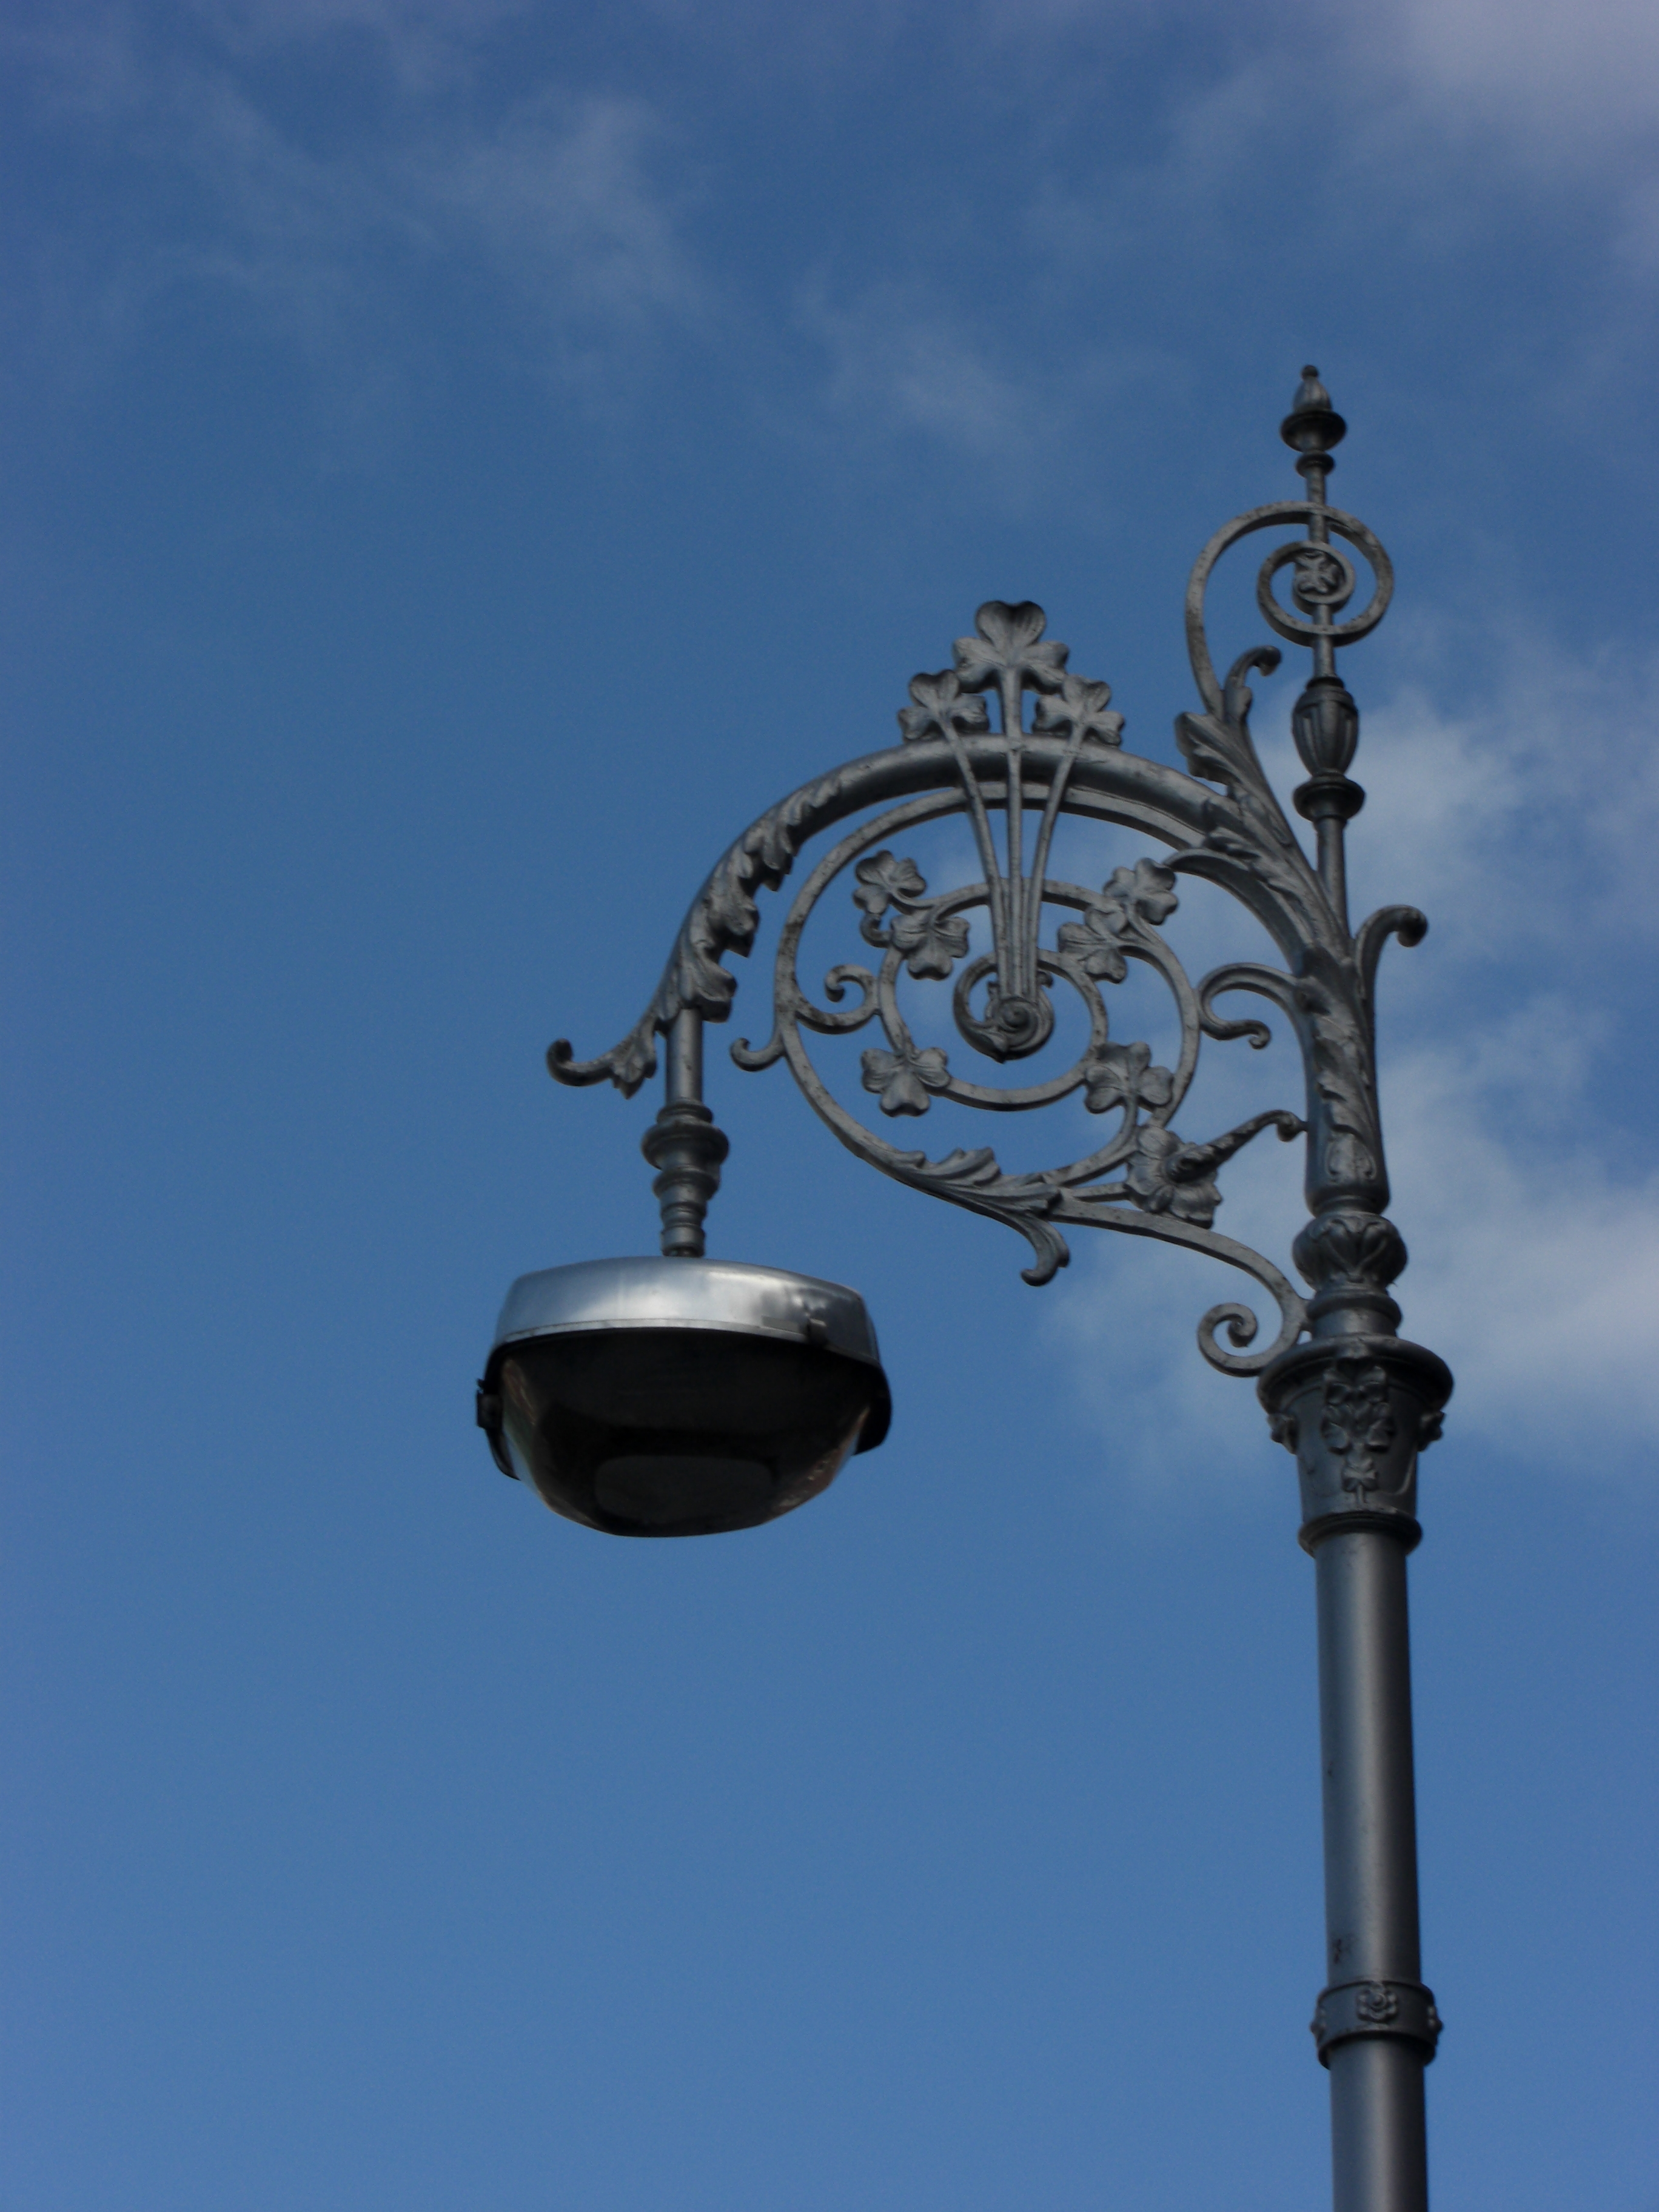 File:Mountjoy square lamppost1.jpg - Wikipedia